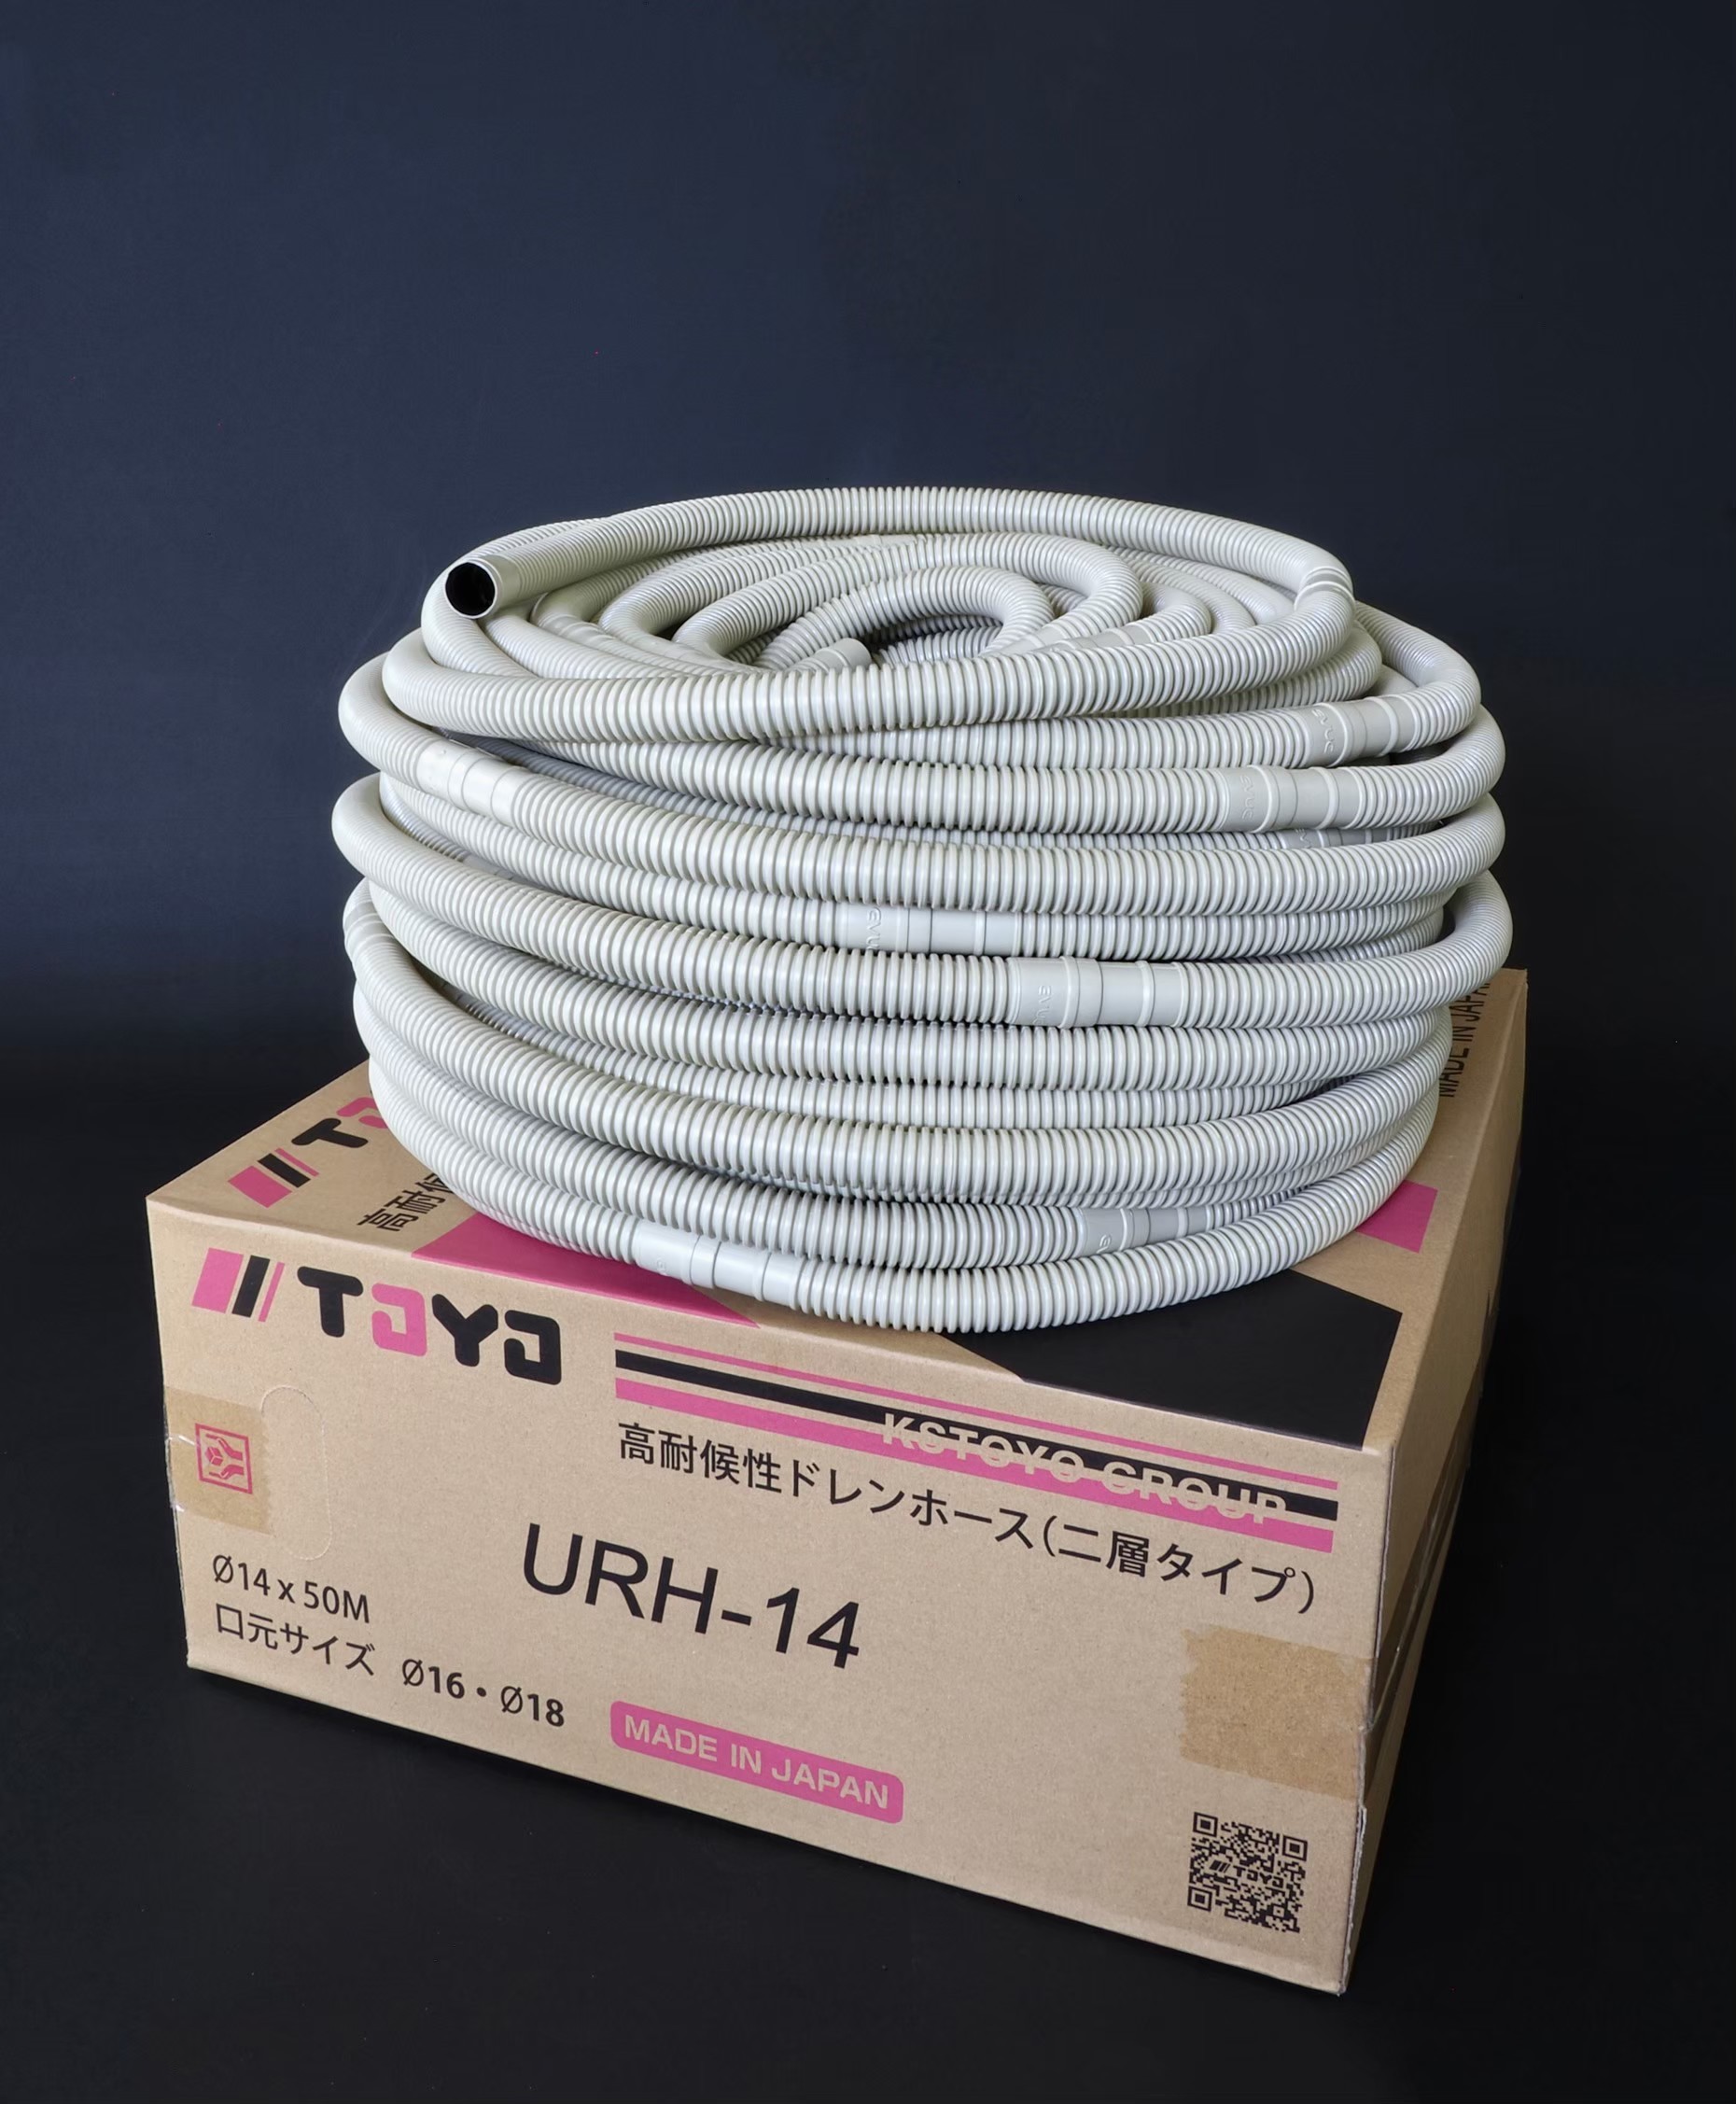 國際桃陽雙層排水管URH-14與包裝